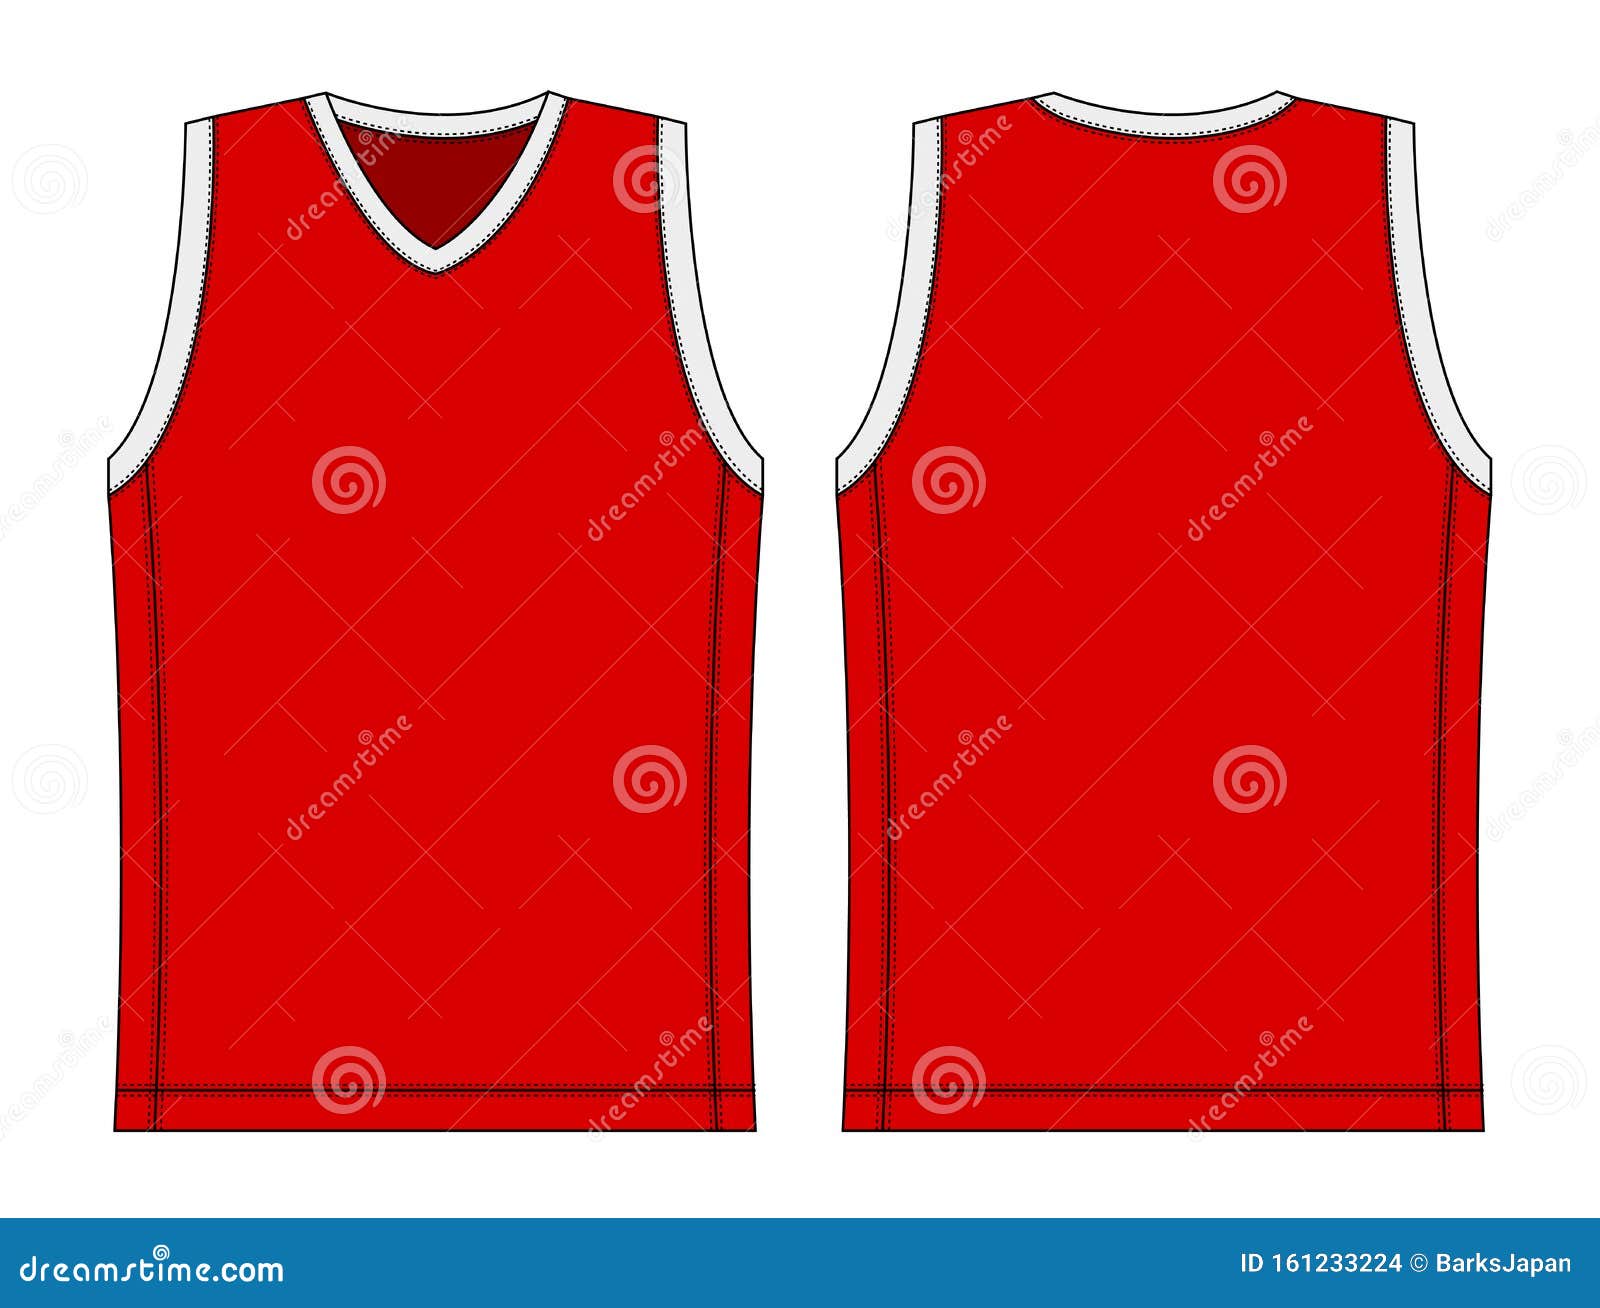 Tank Top , Basketball Uniform Template Illustration / Red Stock For Blank Basketball Uniform Template